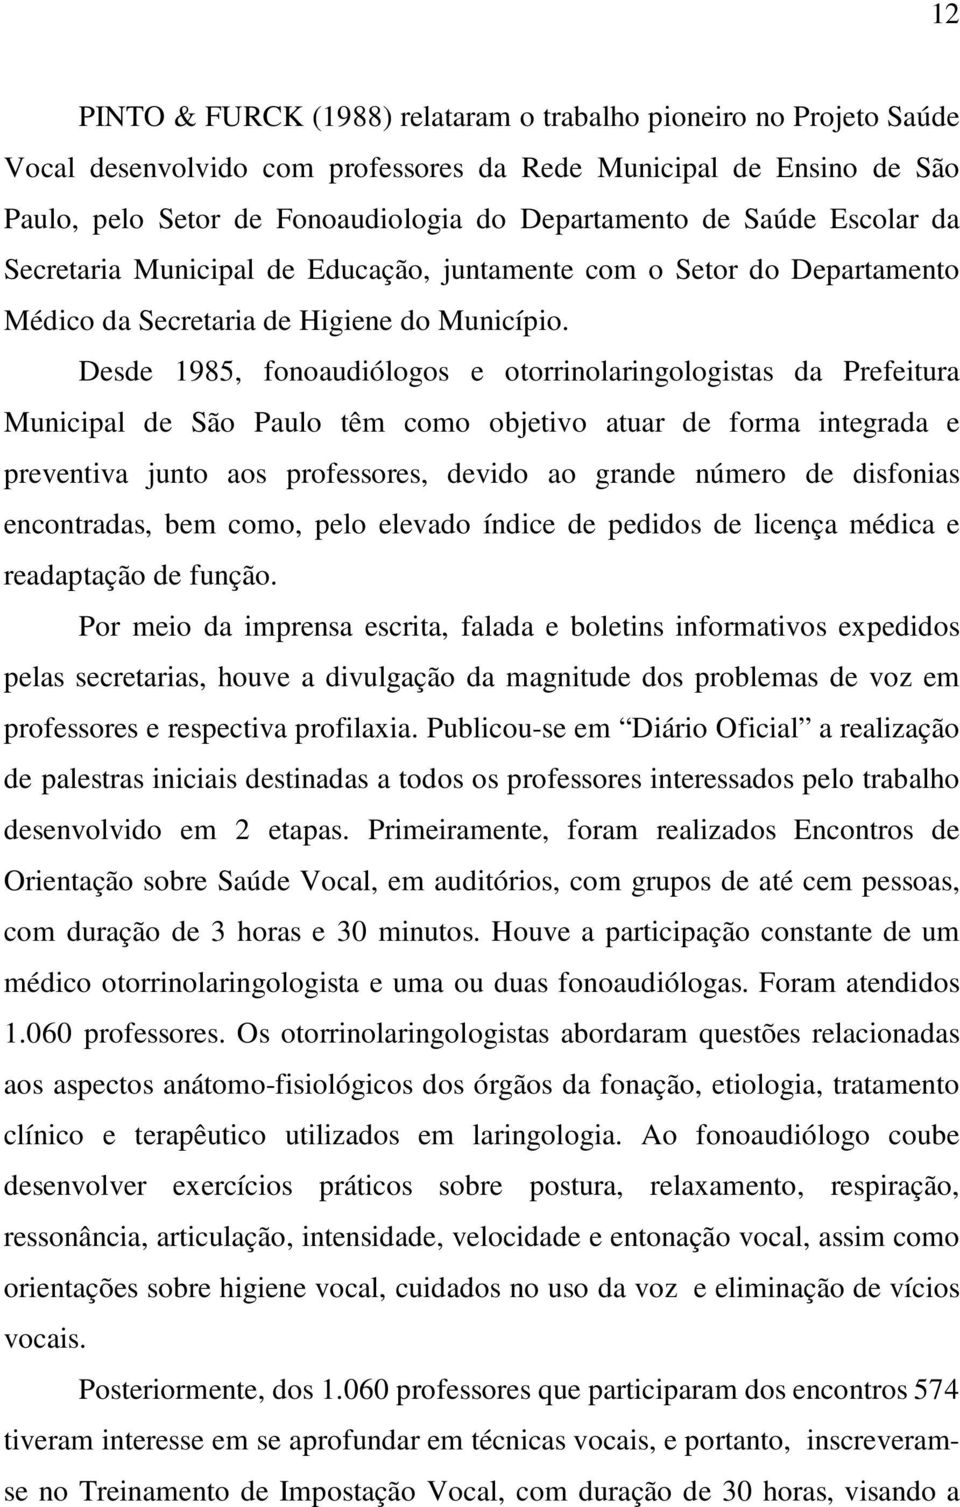 Desde 1985, fonoaudiólogos e otorrinolaringologistas da Prefeitura Municipal de São Paulo têm como objetivo atuar de forma integrada e preventiva junto aos professores, devido ao grande número de